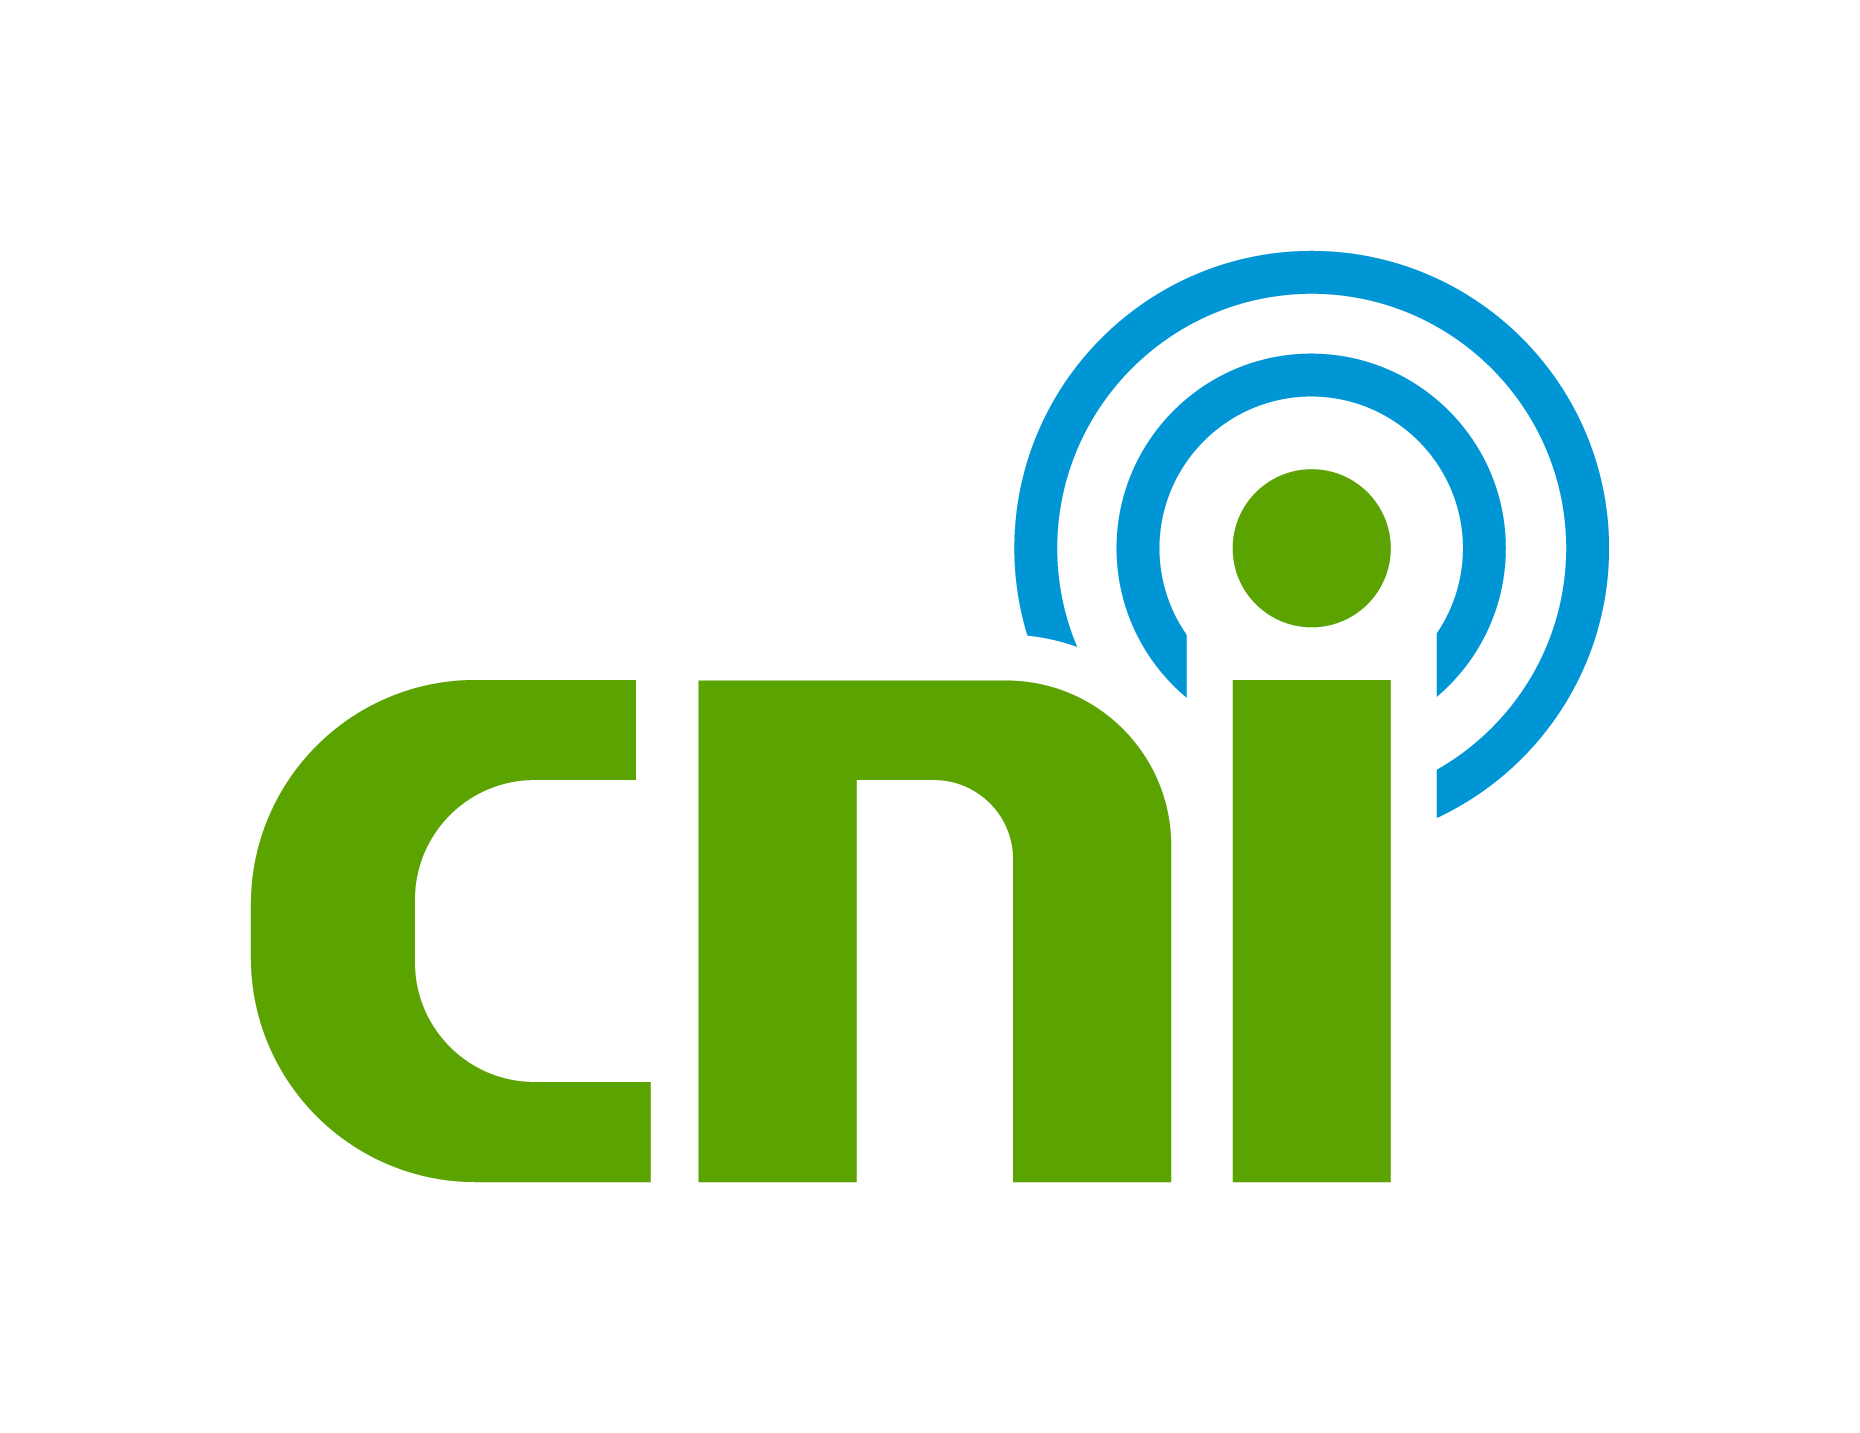 cniteam.com - The Homepage of Com Net, Inc.